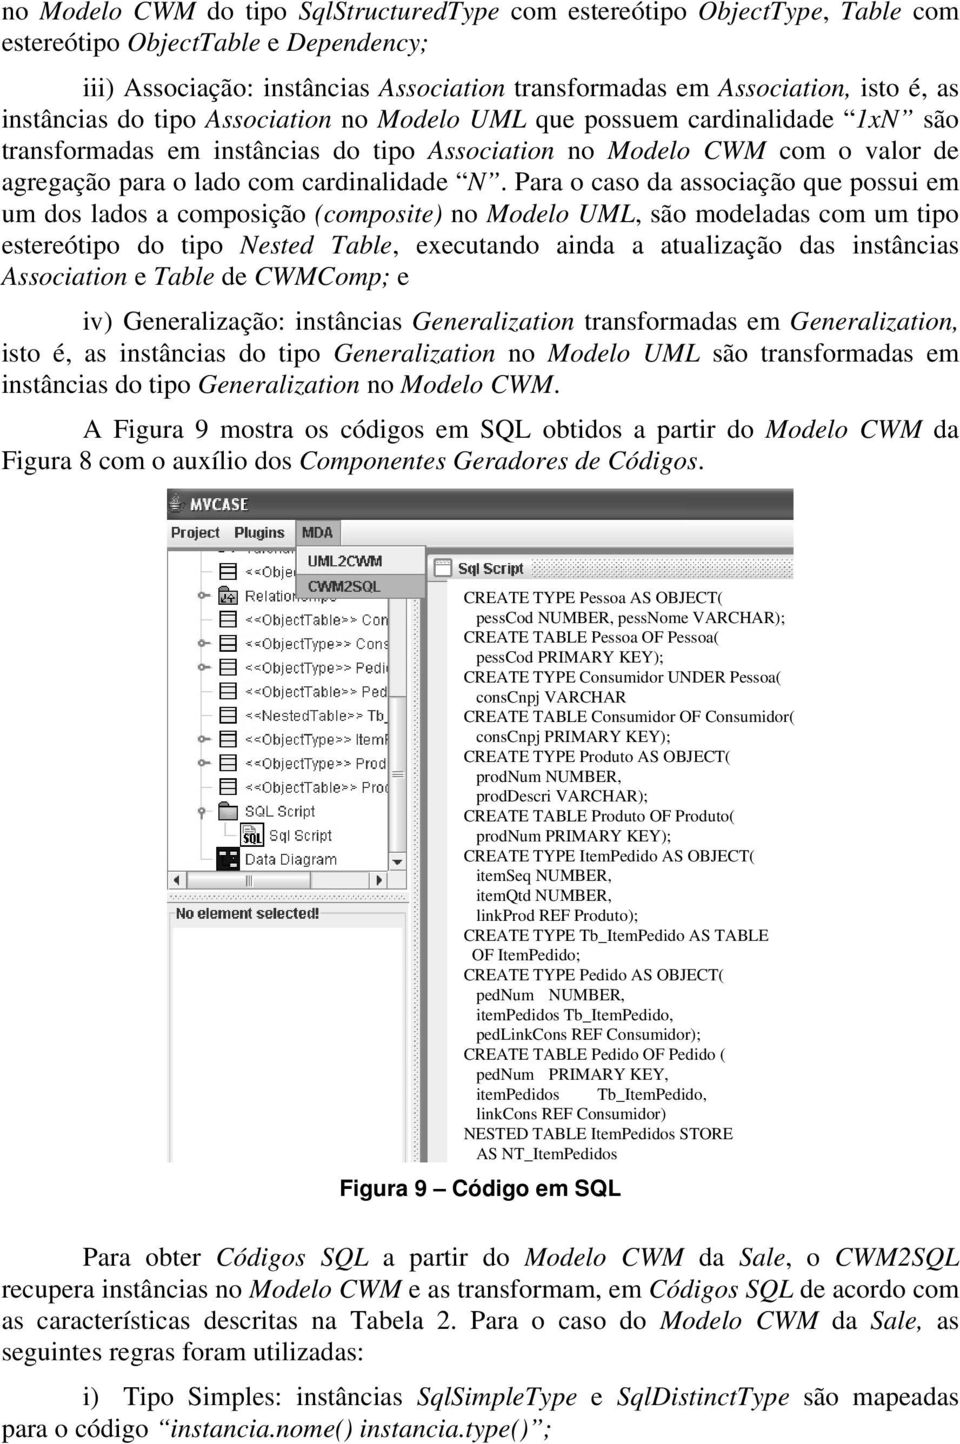 Para o caso da associação que possui em um dos lados a composição (composite) no Modelo UML, são modeladas com um tipo estereótipo do tipo Nested Table, executando ainda a atualização das instâncias